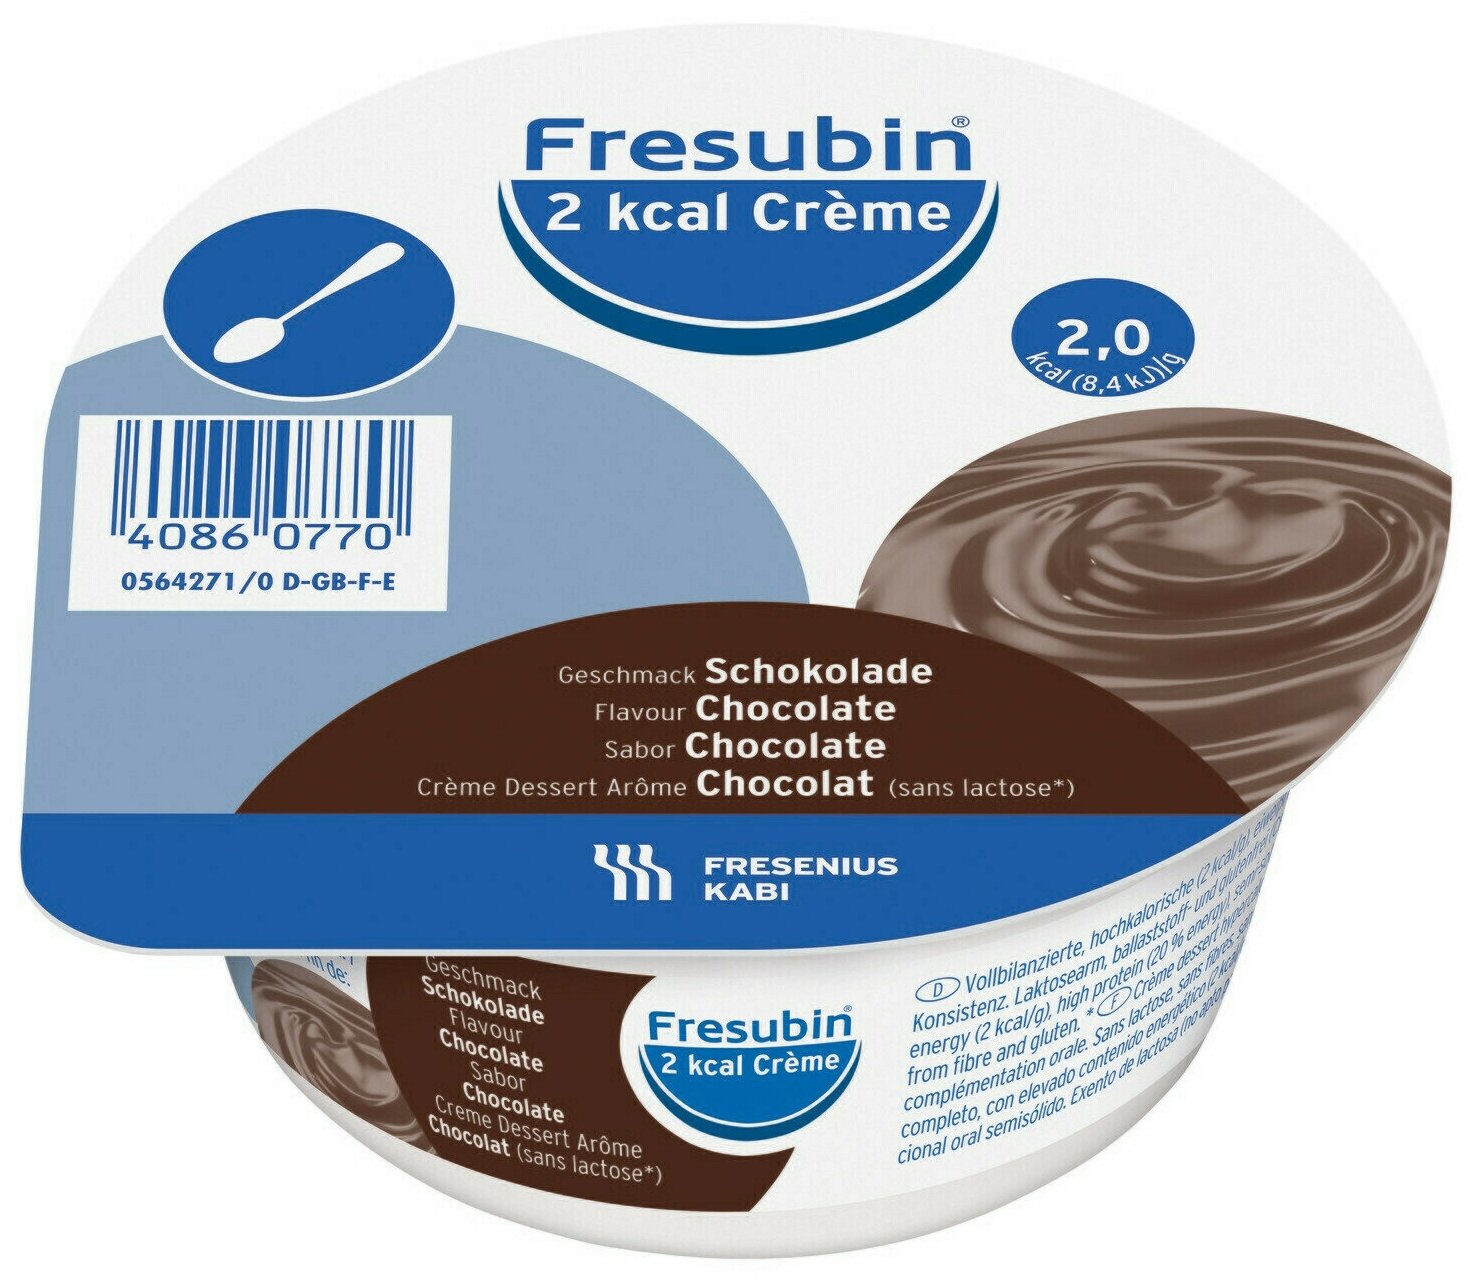 FRESENIUS KABI Фрезубин Крем 2 ккал, готовое к употреблению, 125 мл, 125 г, шоколад